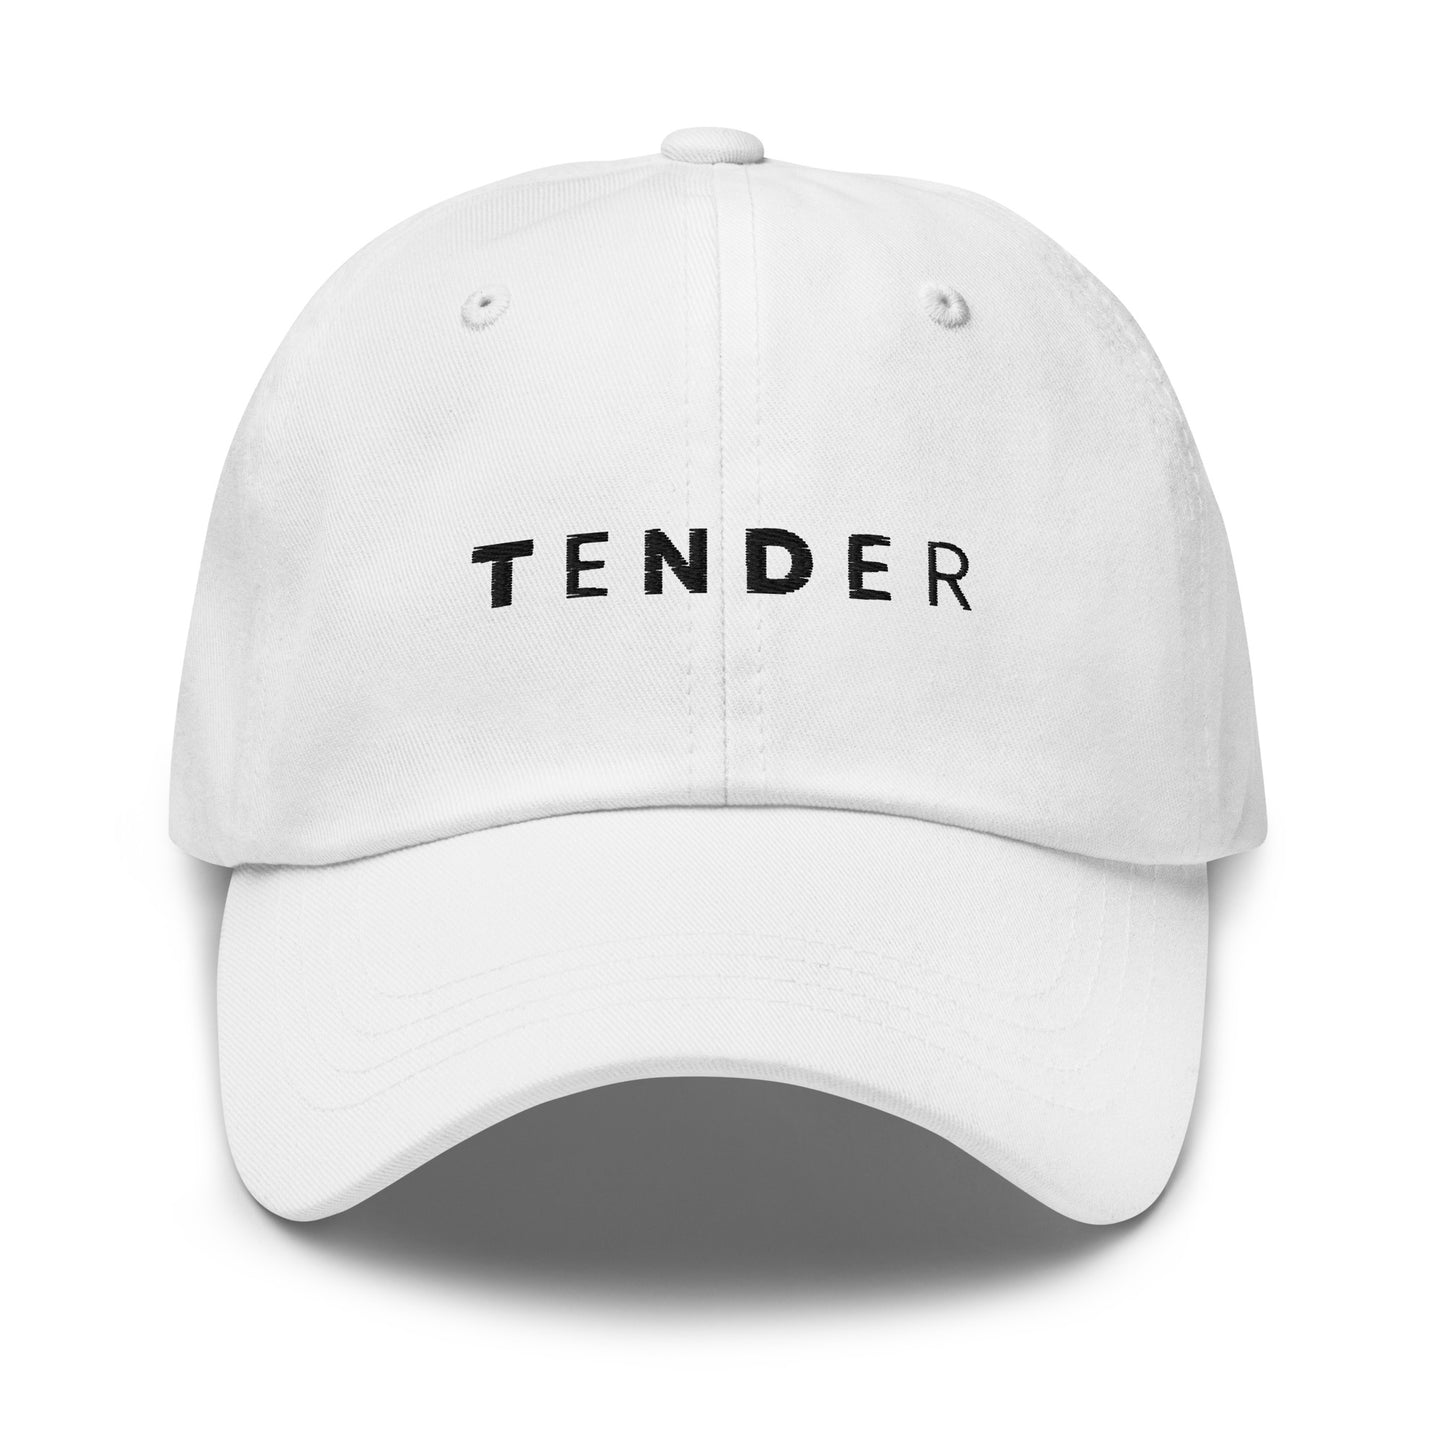 TENDER Dad Hat